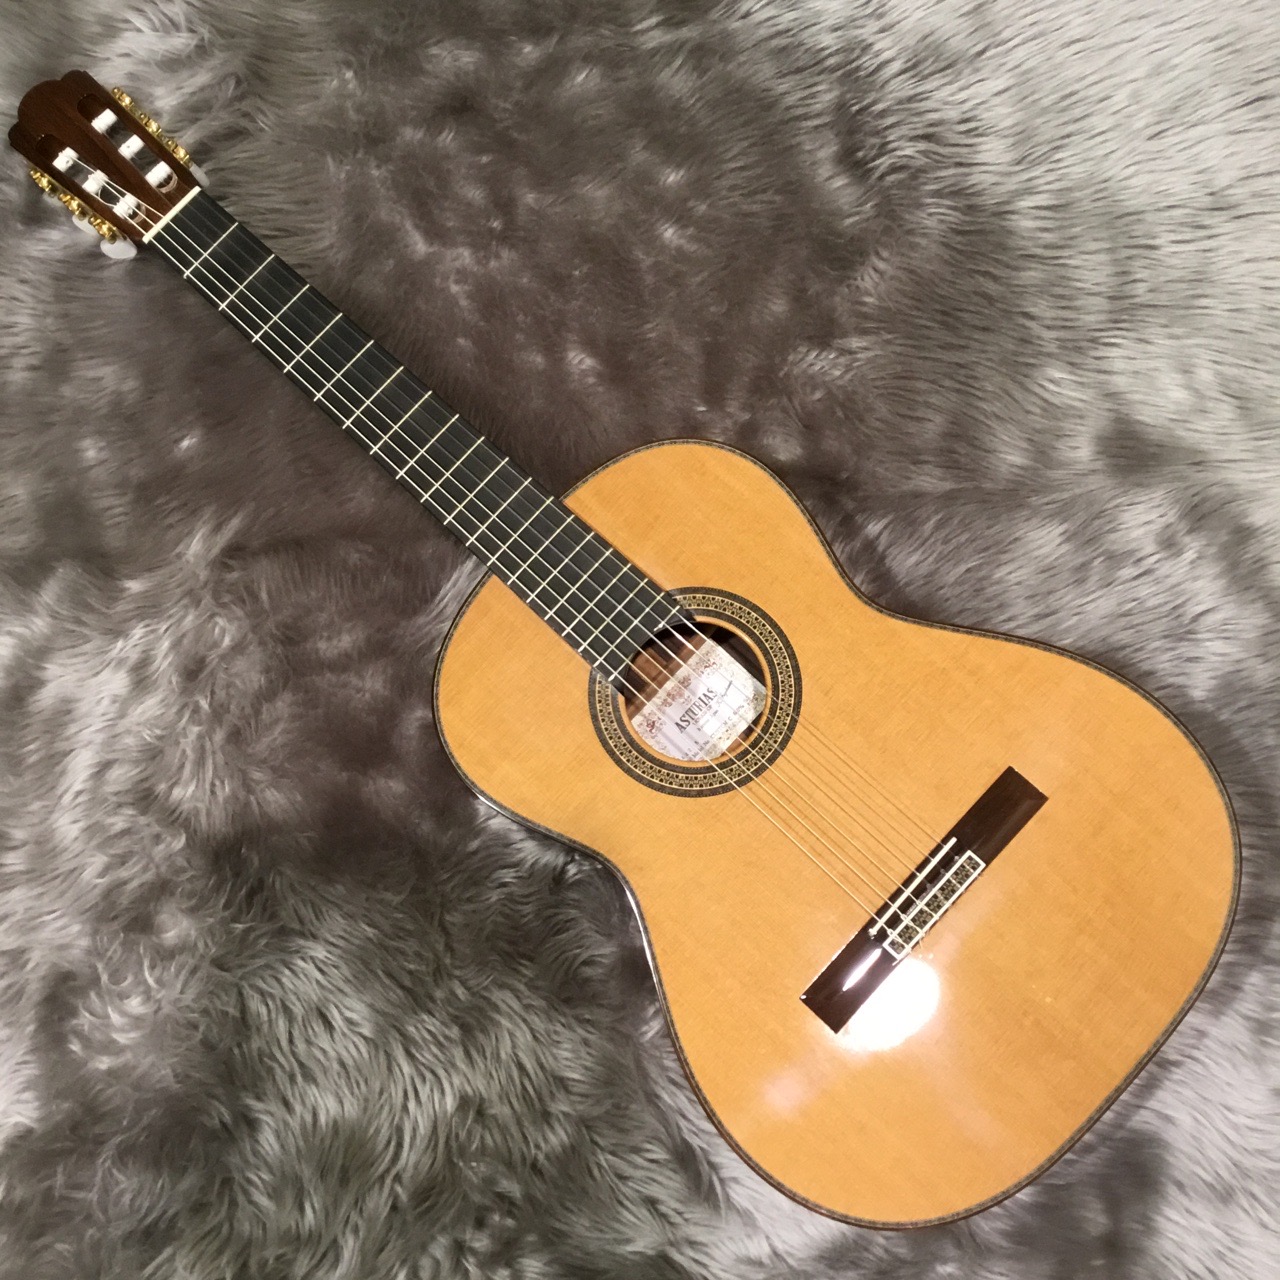 【売り切れ】クラシックギター ハードケース ASTURIAS カスタムC アストリアス アストリアスギター guitar classical 美品 ケース付き custom c 本体